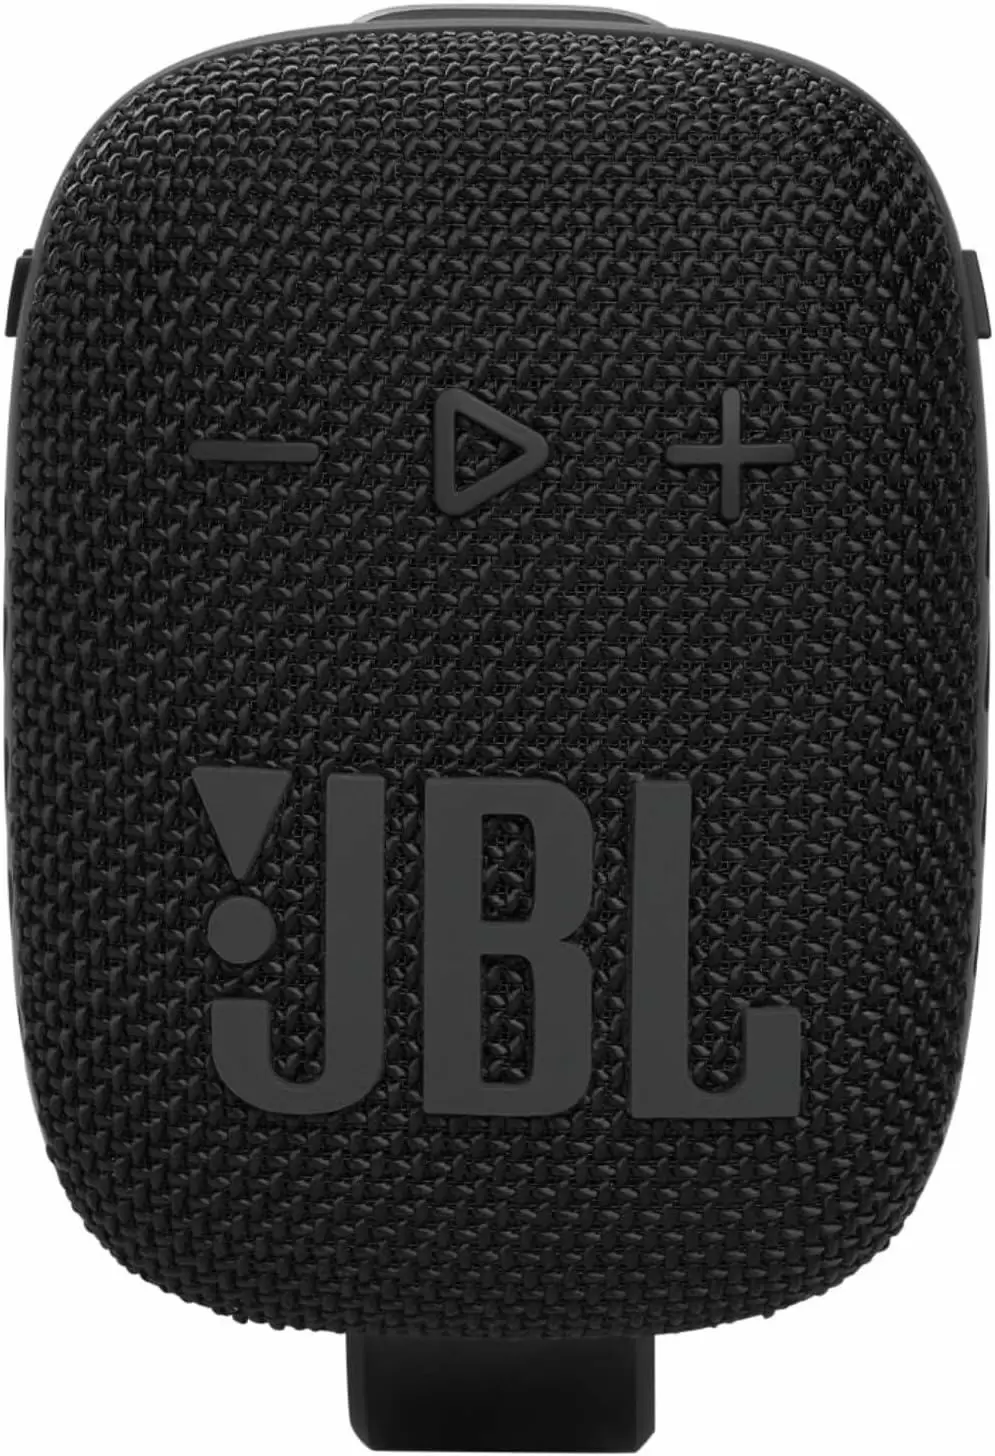 Boxă portabilă JBL Wind 3S, negru